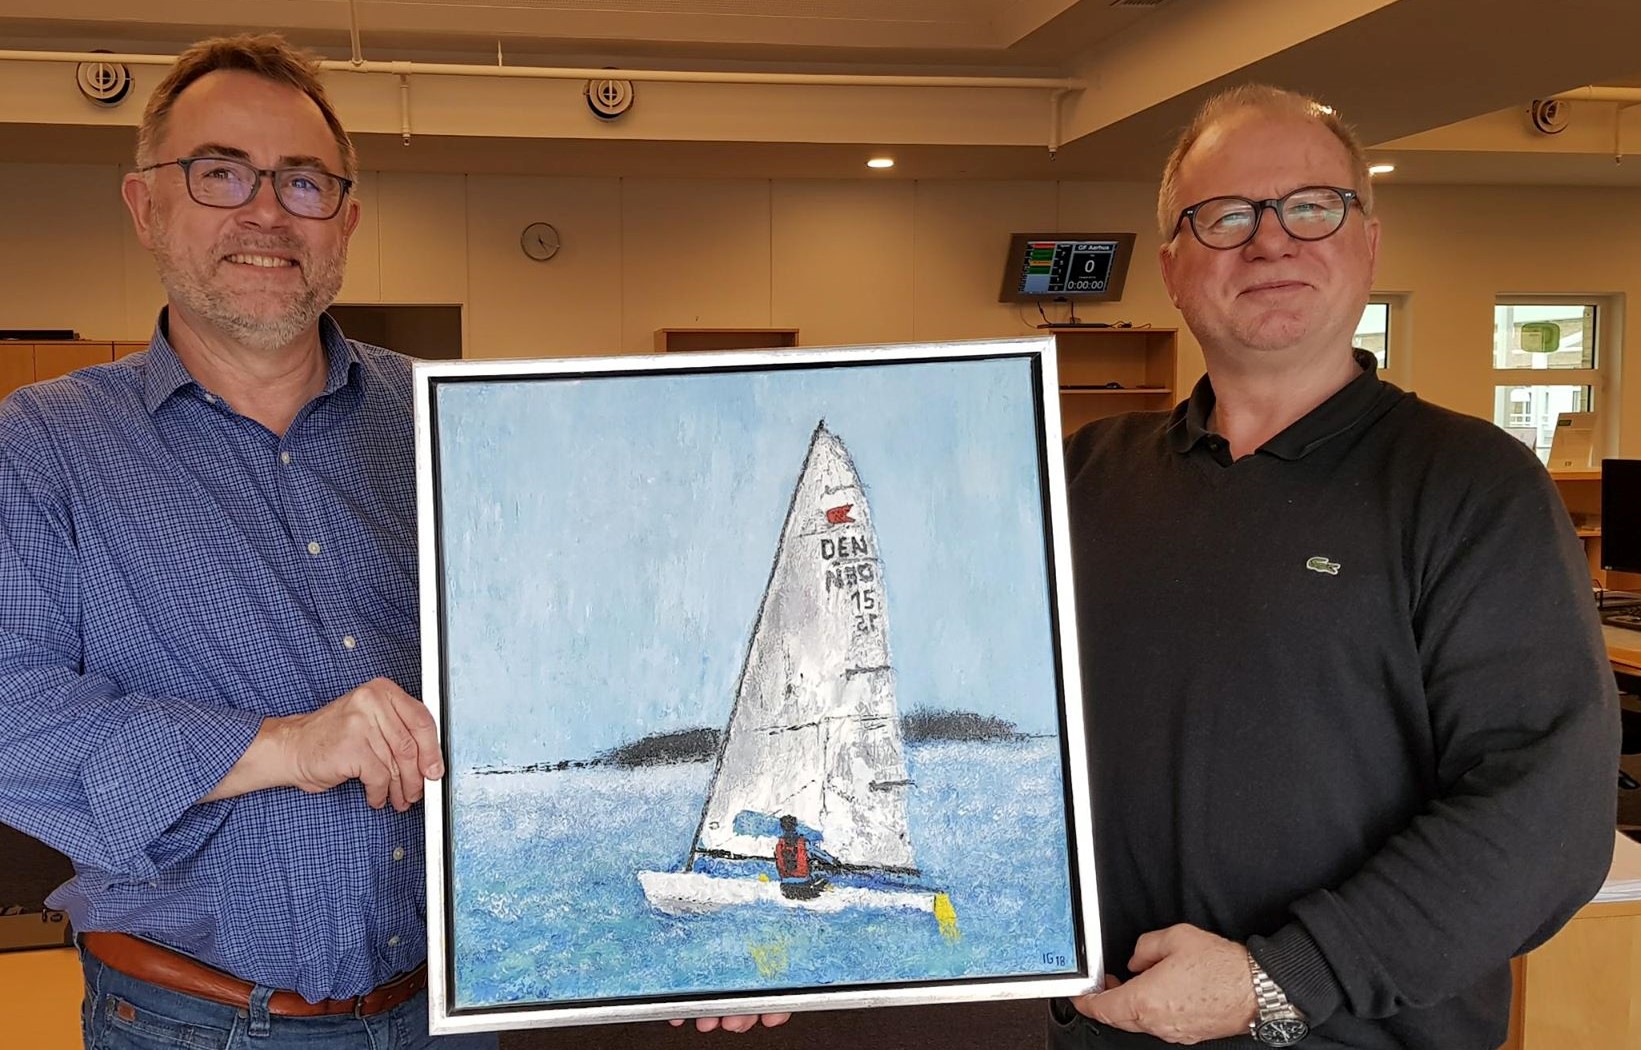 Til venstre står Stig Frandsen, mens maleren Ingo Griem står til højre. Begge sejler OK-jolle i Kaløvig. Foto: Troels Lykke